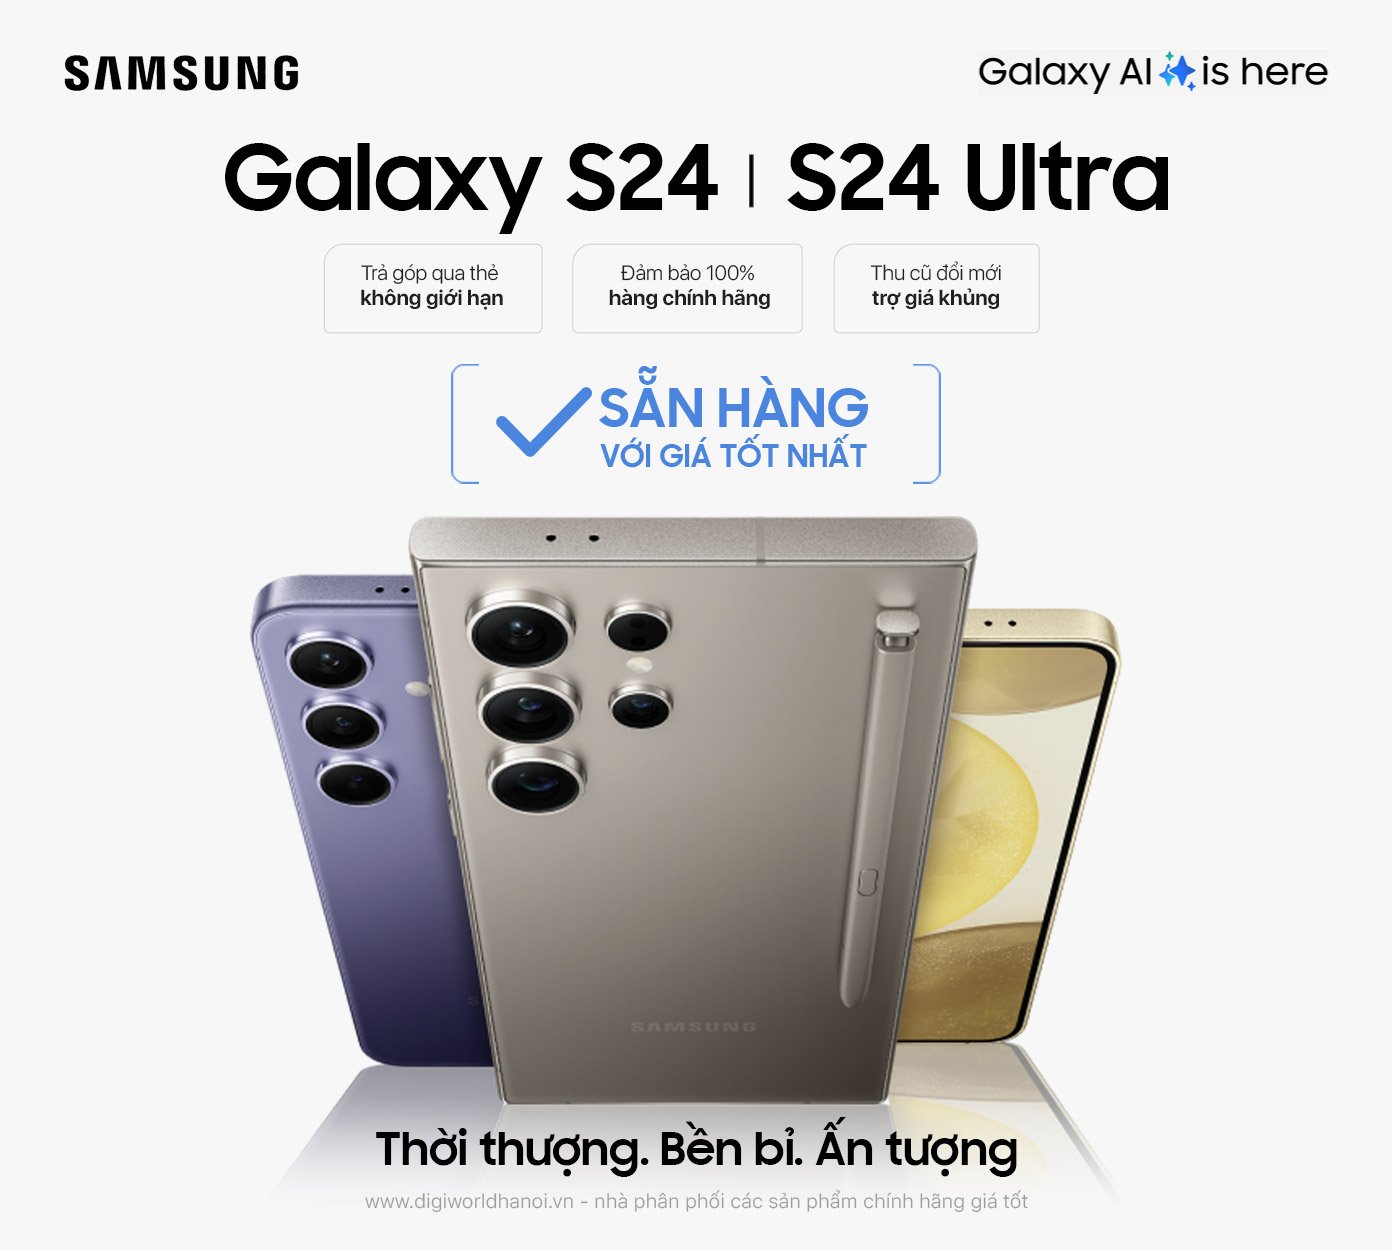 Điện thoại Samsung Galaxy S24, S24 Ultra tại Digiworld Hà Nội đang sẵn hàng với giá tốt nhất!